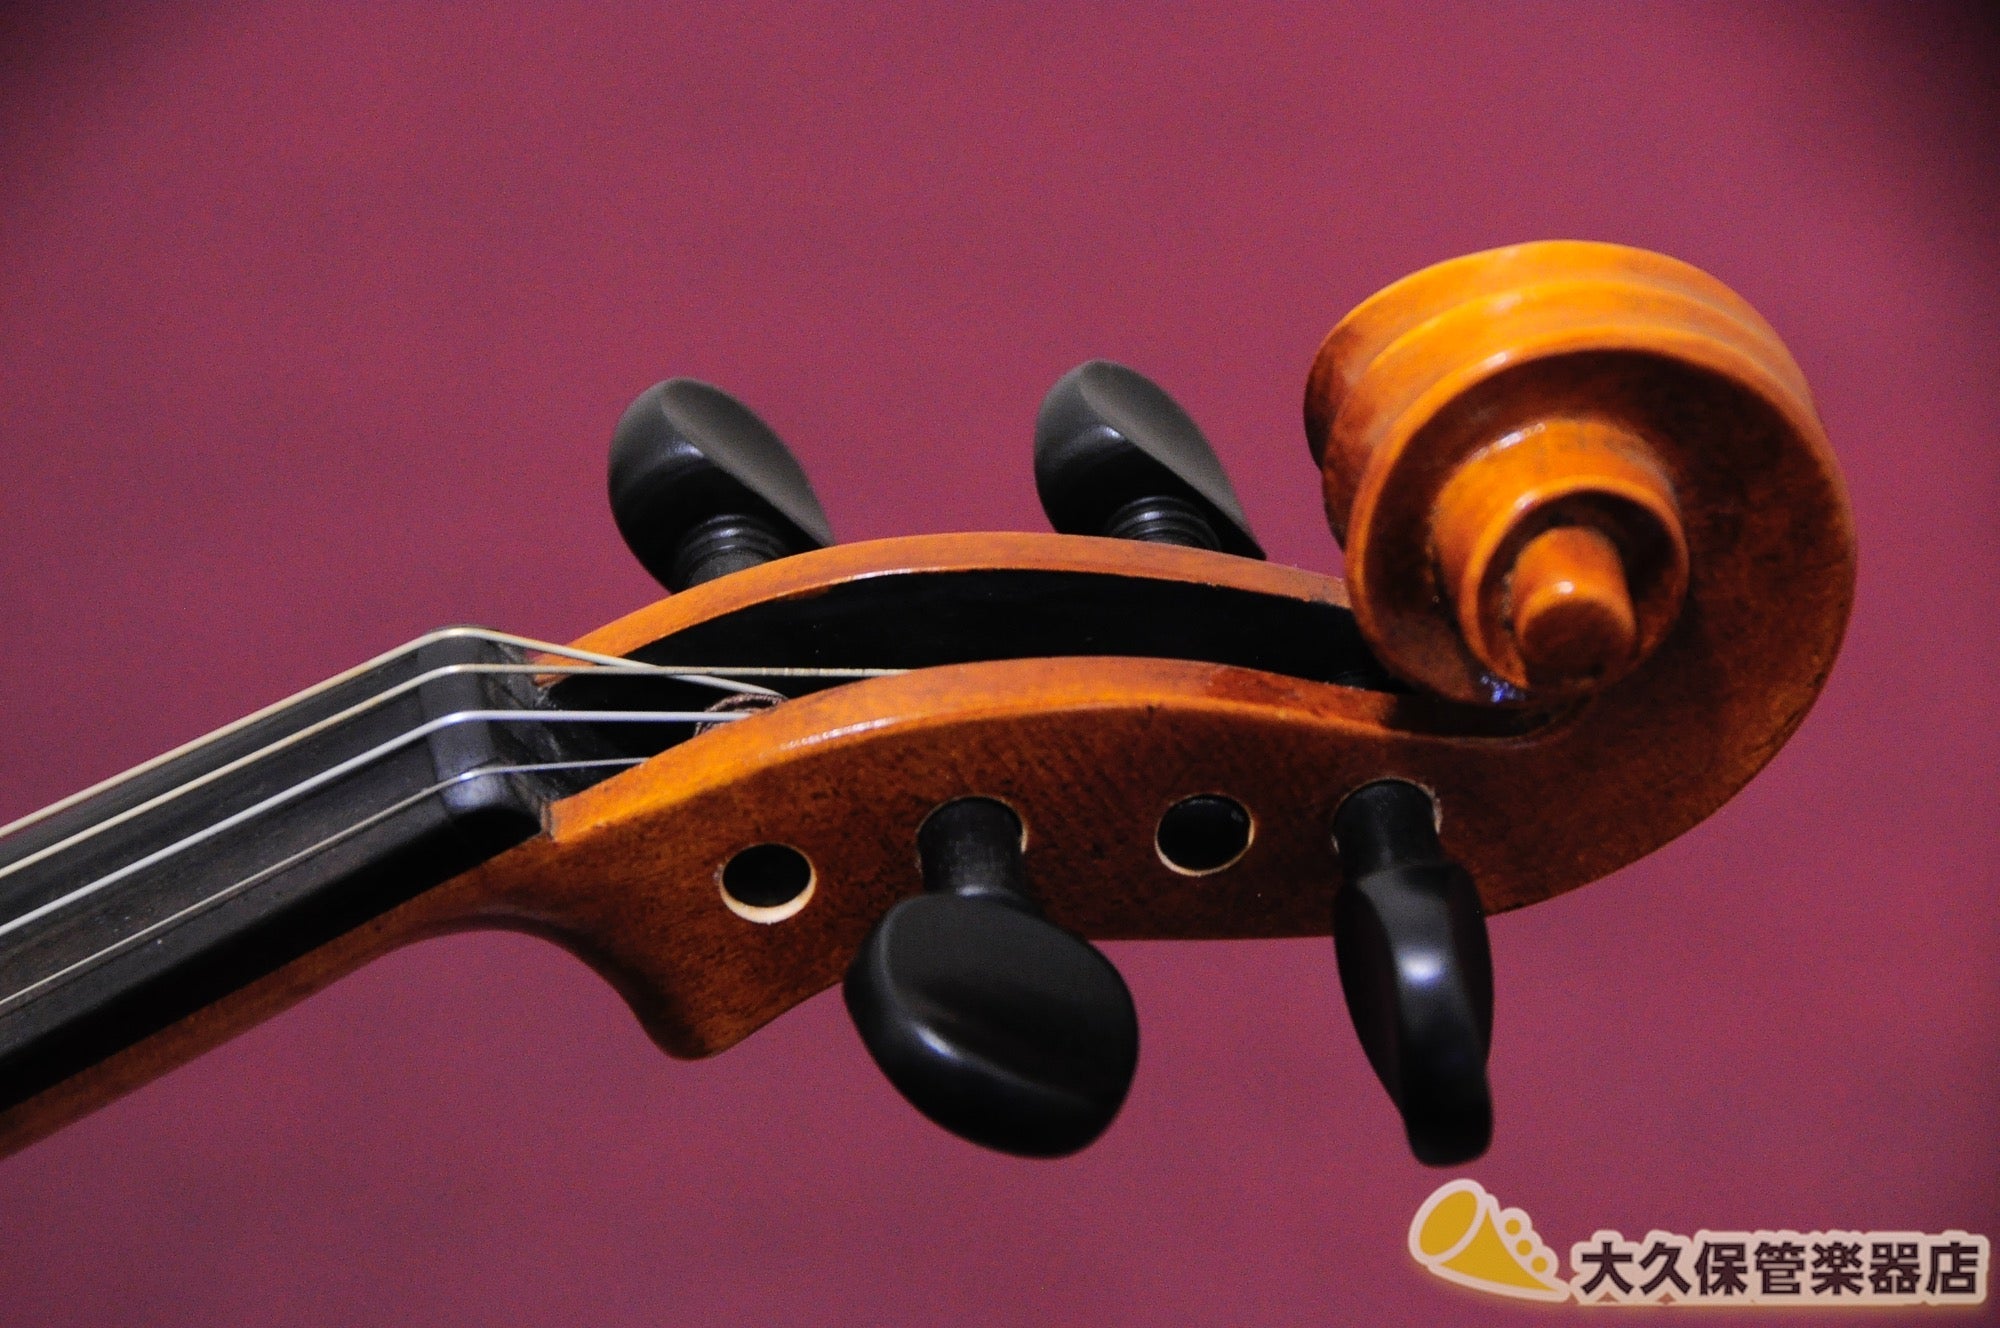 いつ弦の張り替えをされましたか【調整品】San Antonio V-802 4/4 バイオリン 2002年製